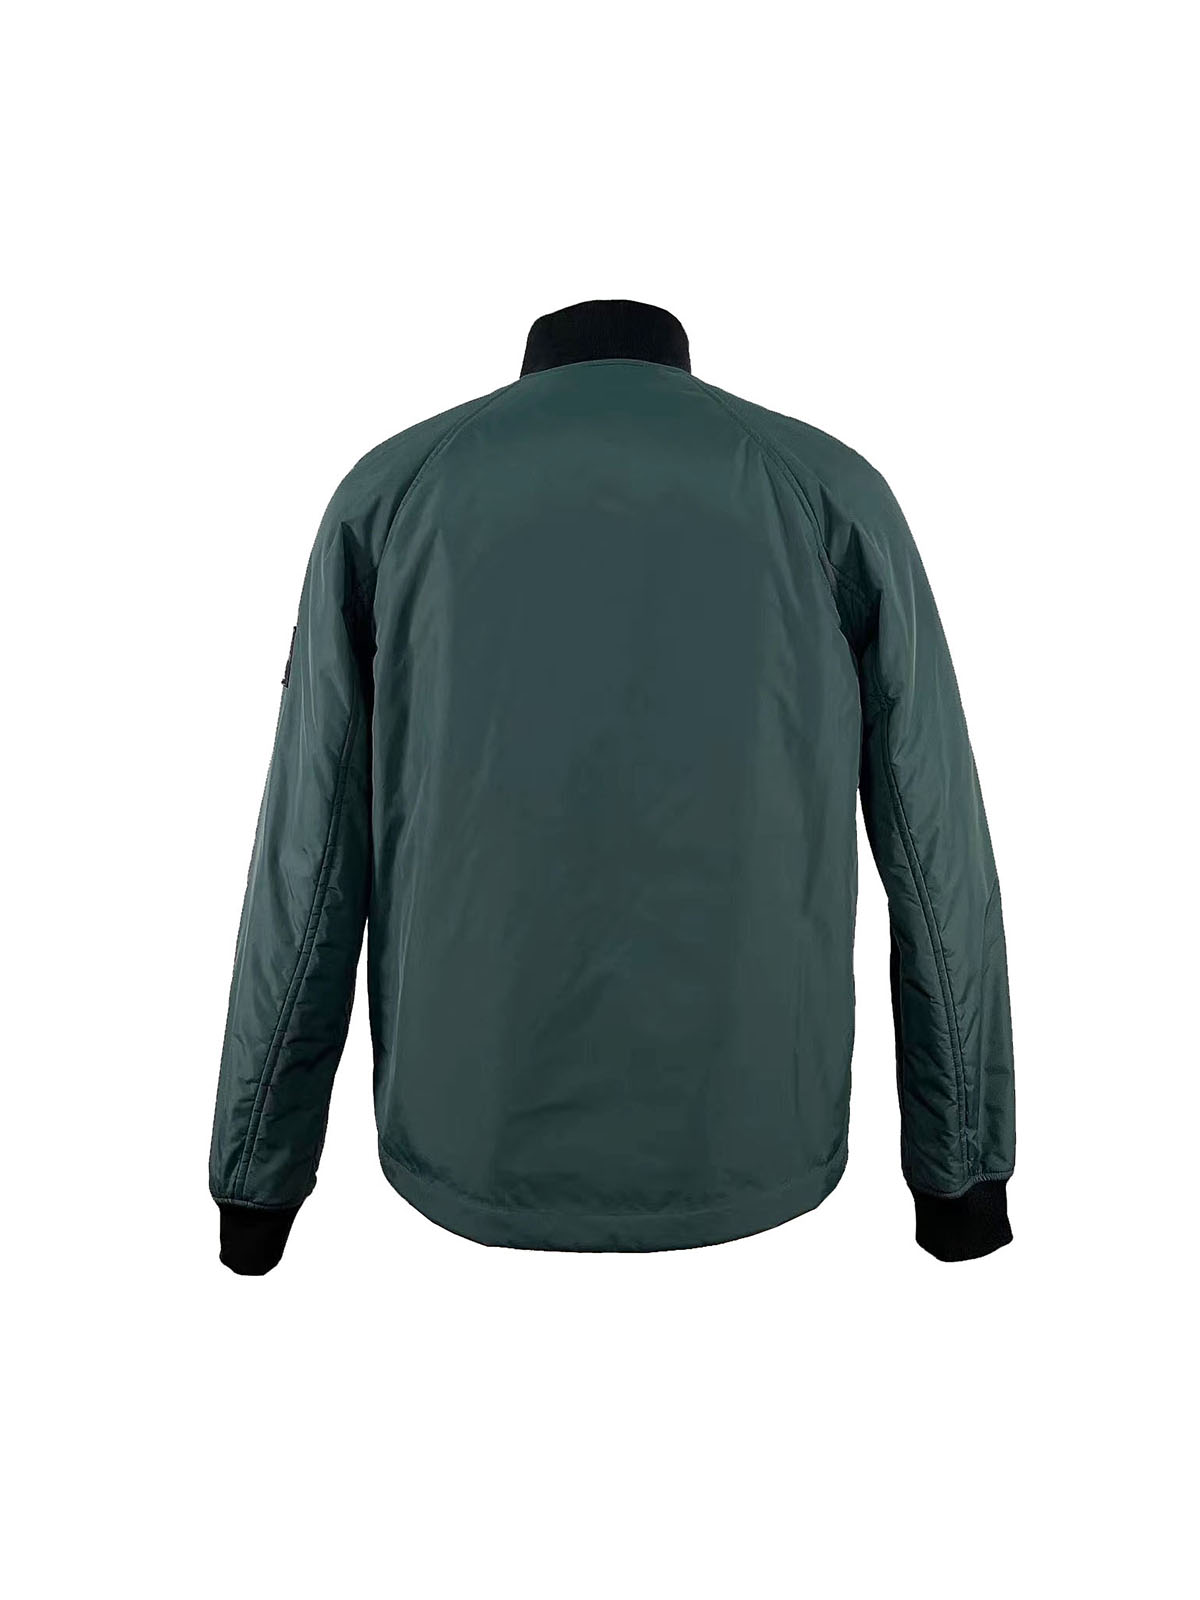 2.padded jacket (3)